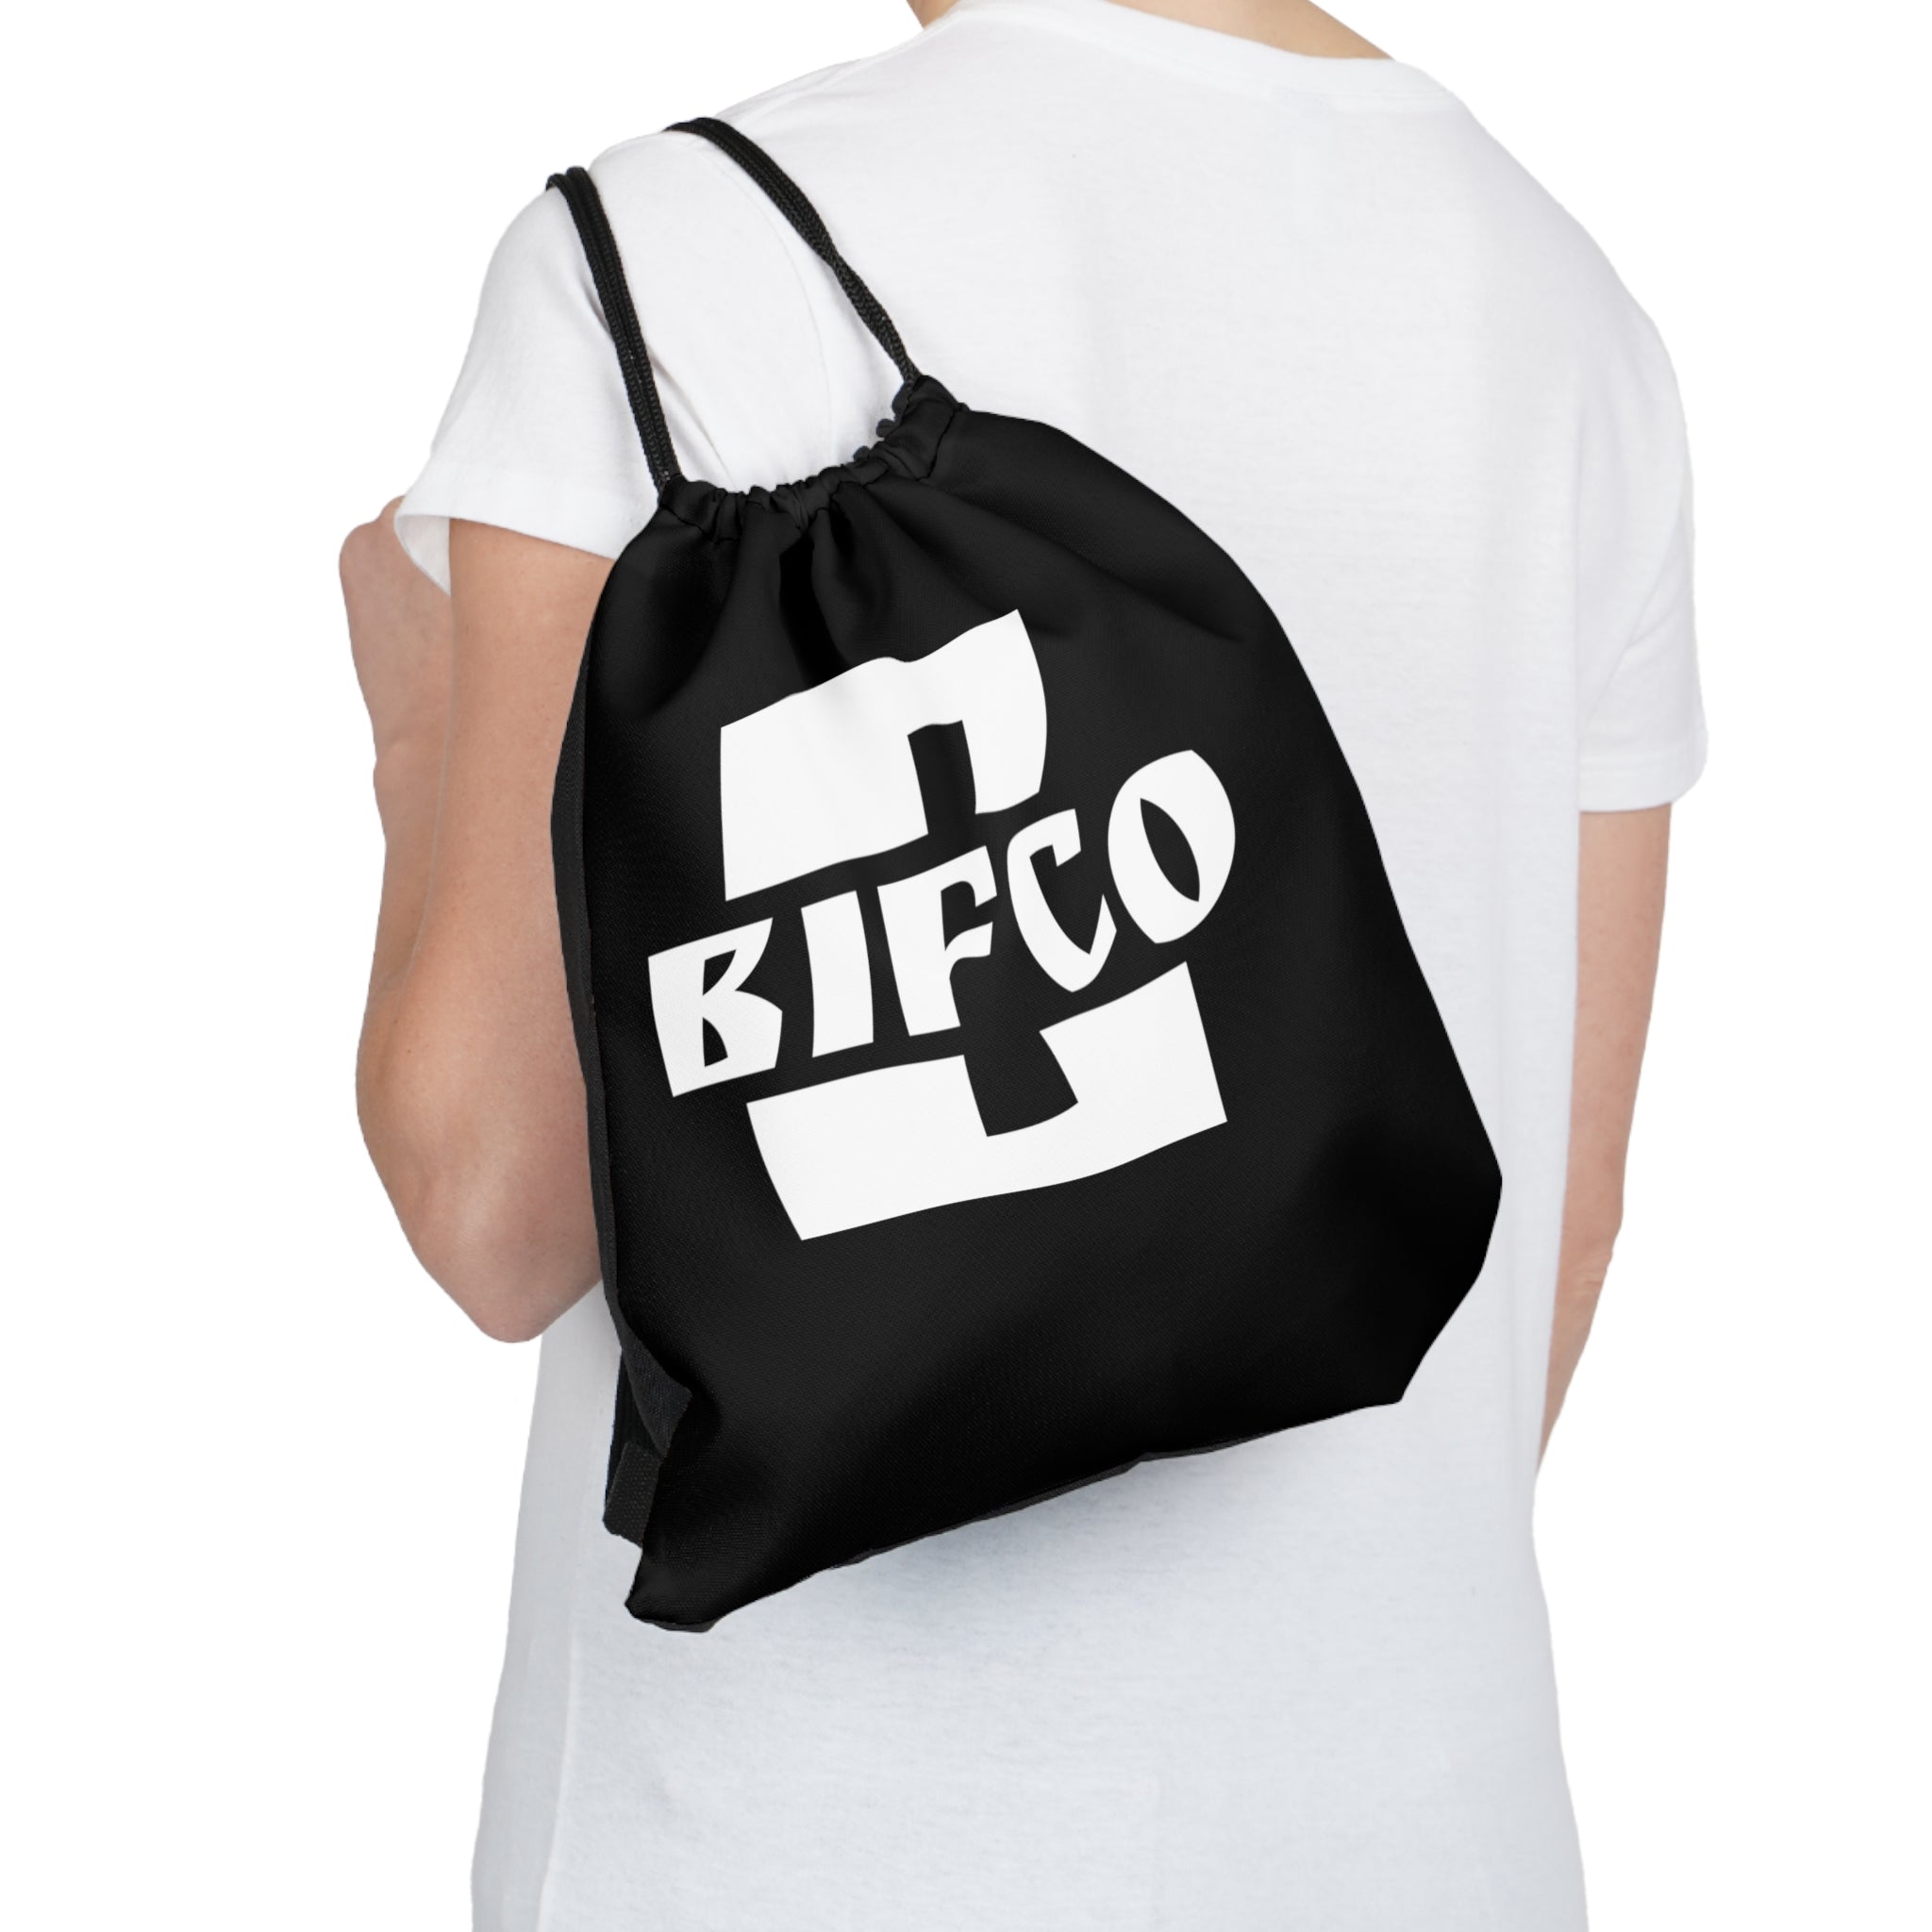 Bifco Tote Bag